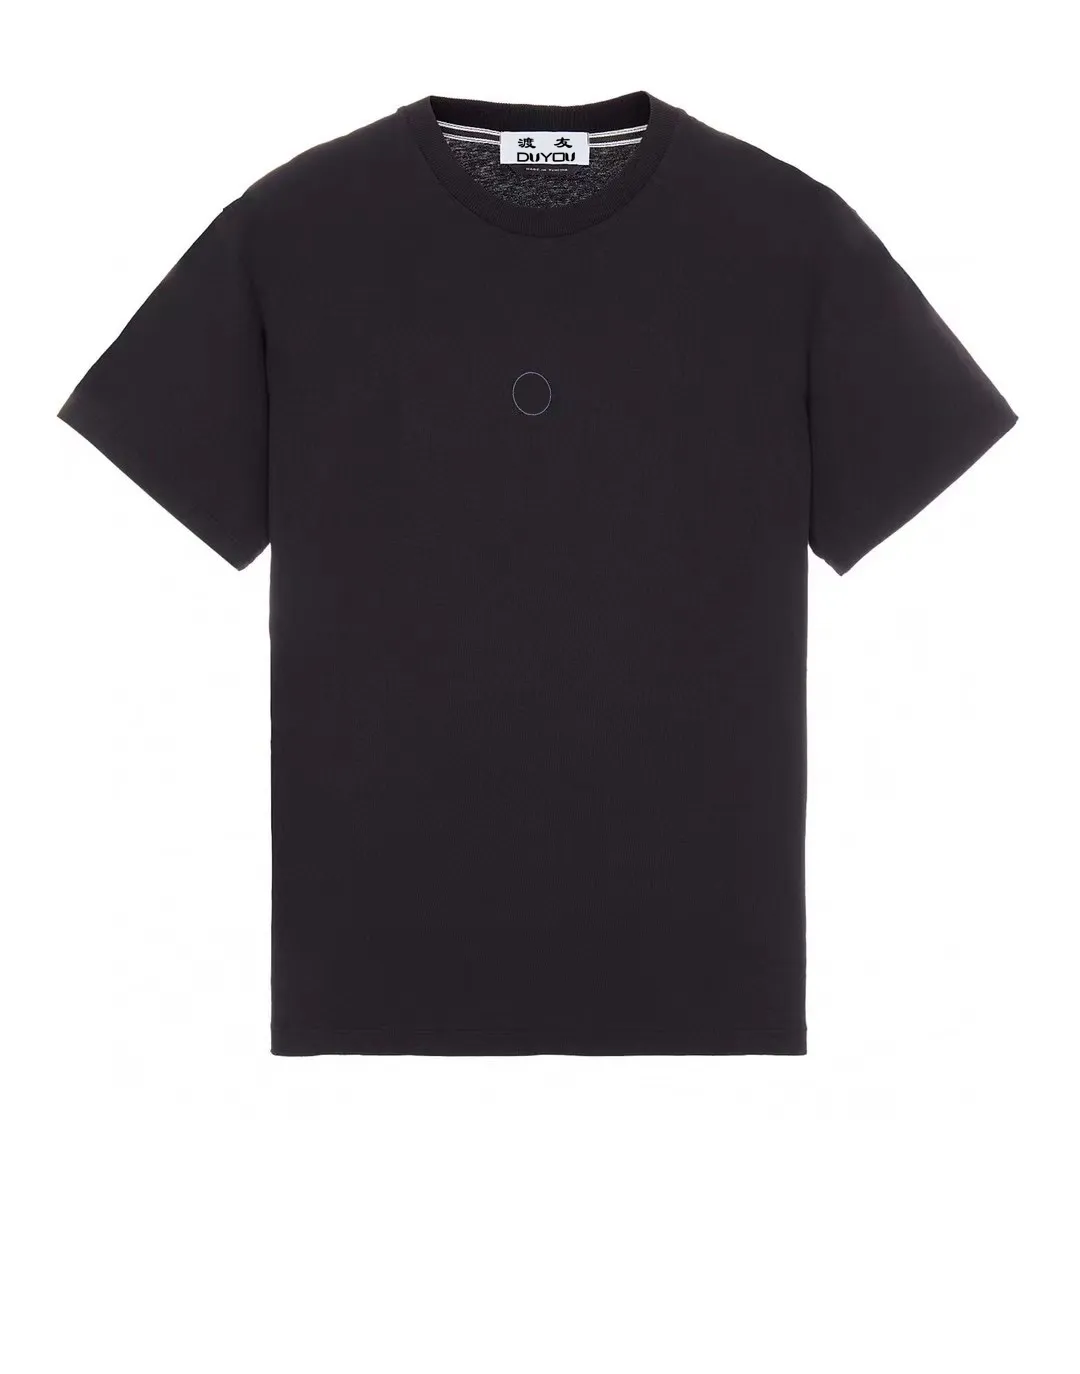 DUYOU T-shirt surdimensionné avec lettres de lavage en jersey vintage 100% coton T-shirt hommes occasionnels T-shirts de base femmes qualité classique hauts DY9012